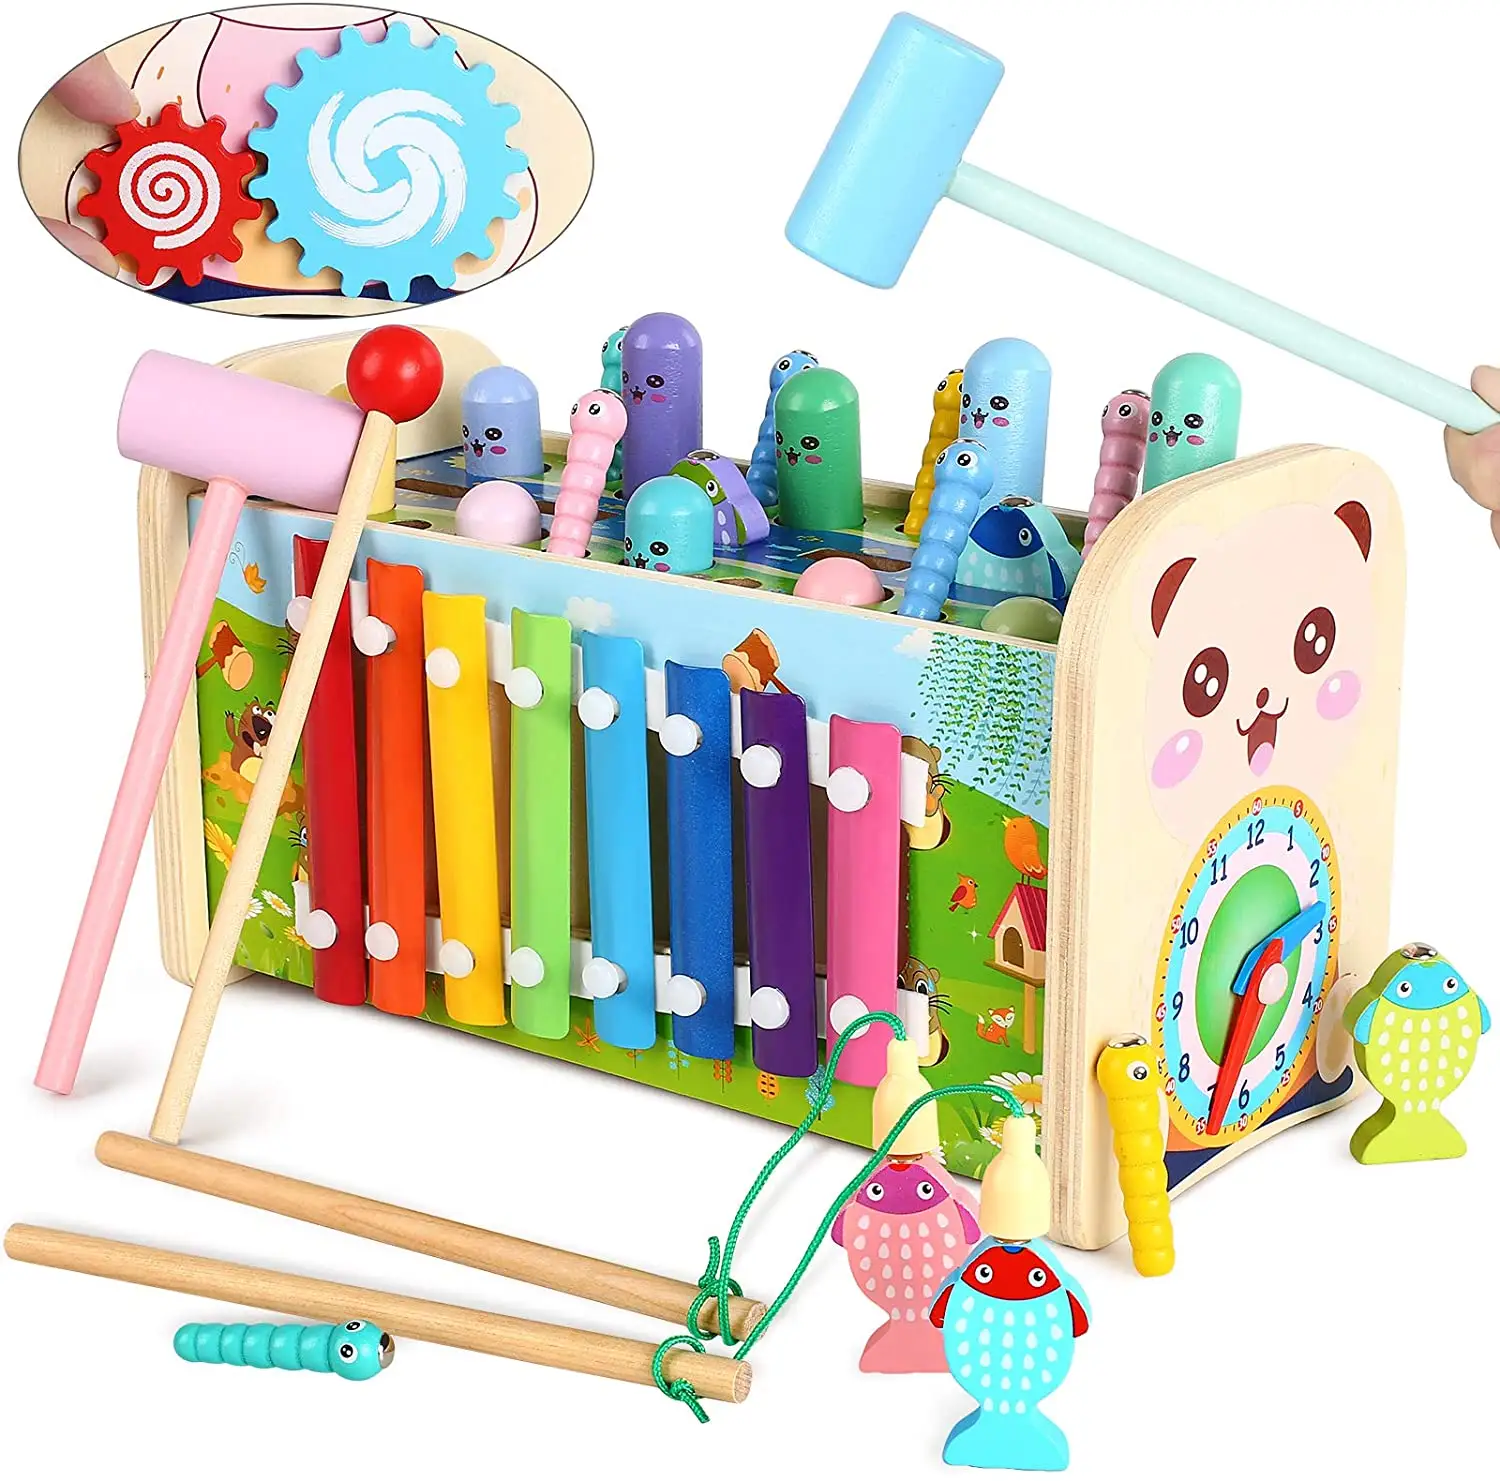 Juguete educativo Montessori para niños pequeños, Juguete Musical de madera con Motor, instrumentos musicales, Xylophone